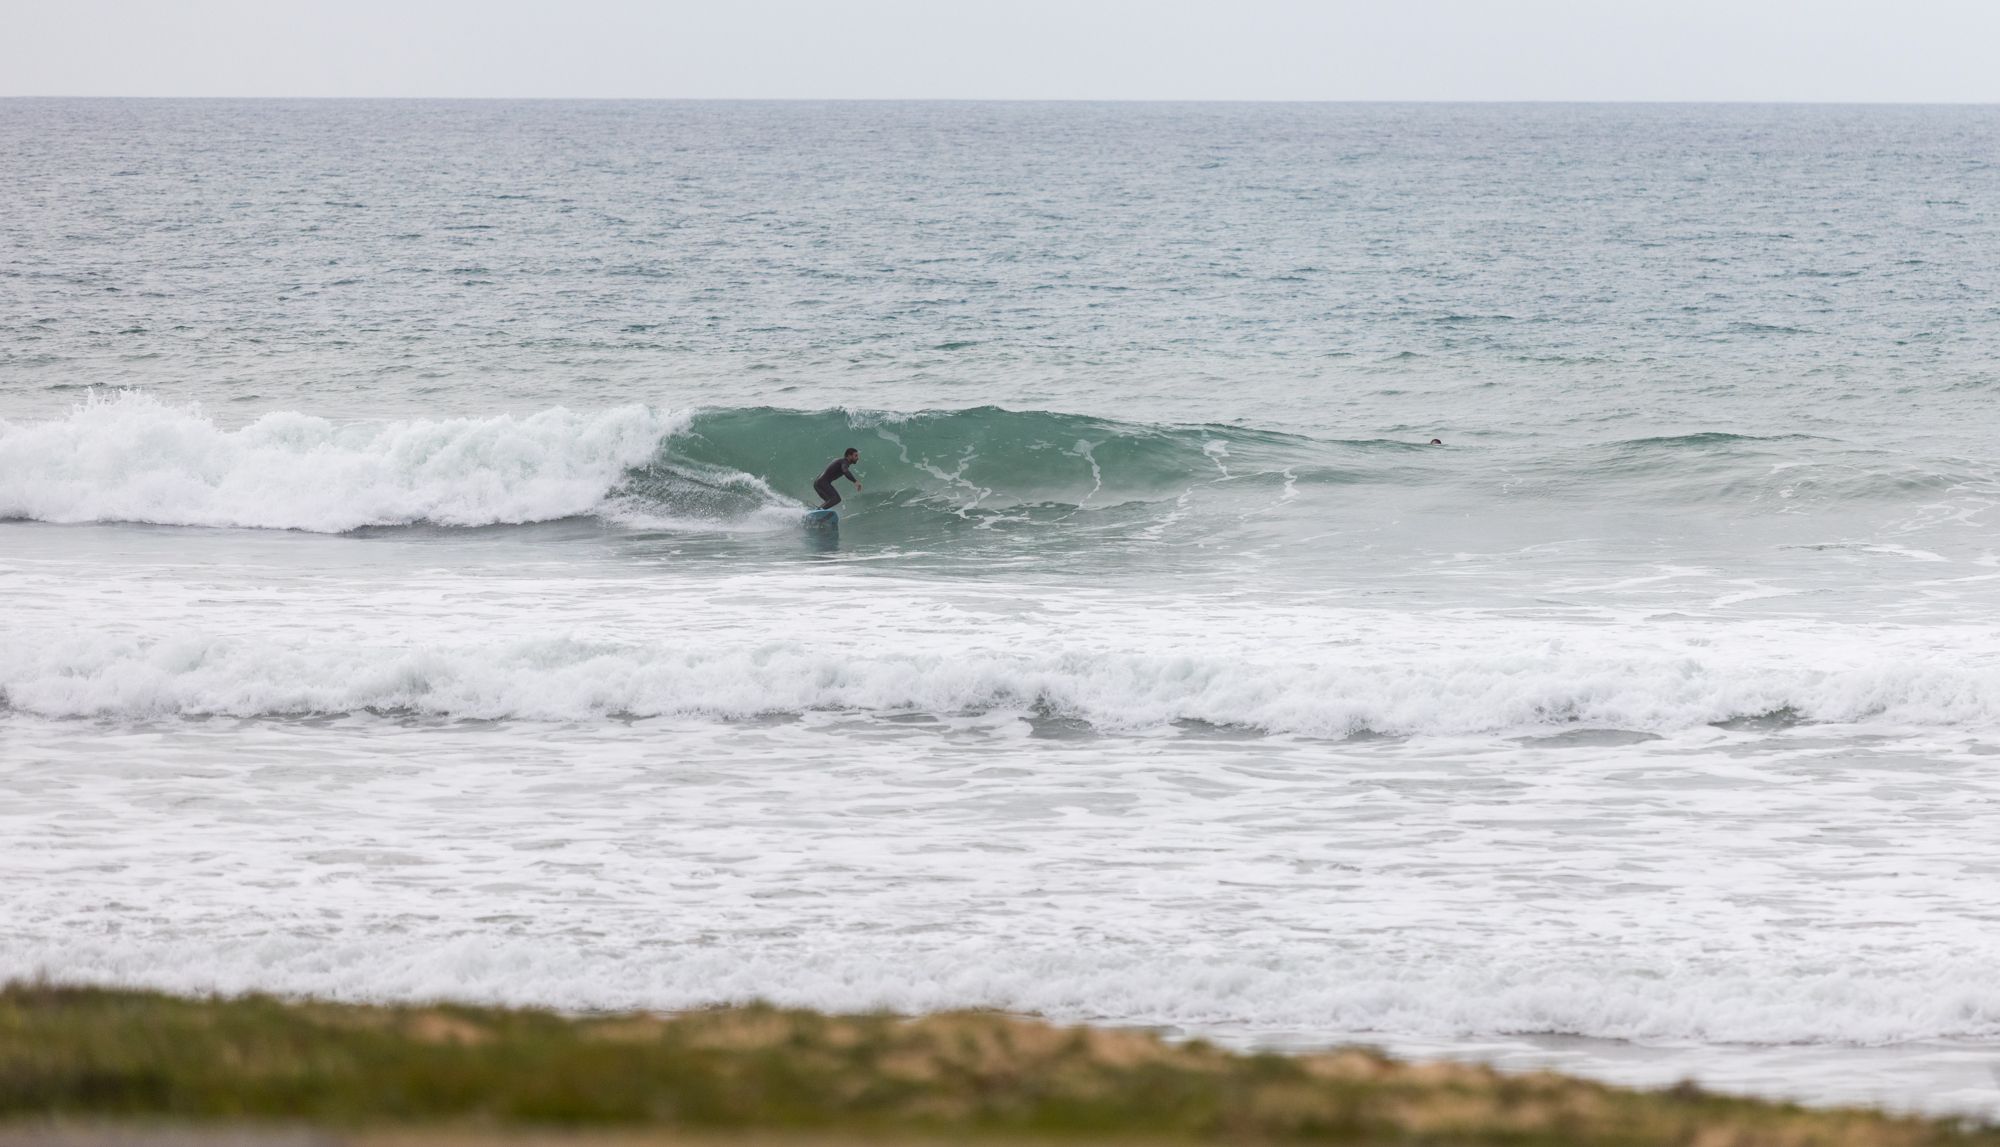 Una persona surfea este martes en El Palmar. FOTO: JUAN CARLOS TORO